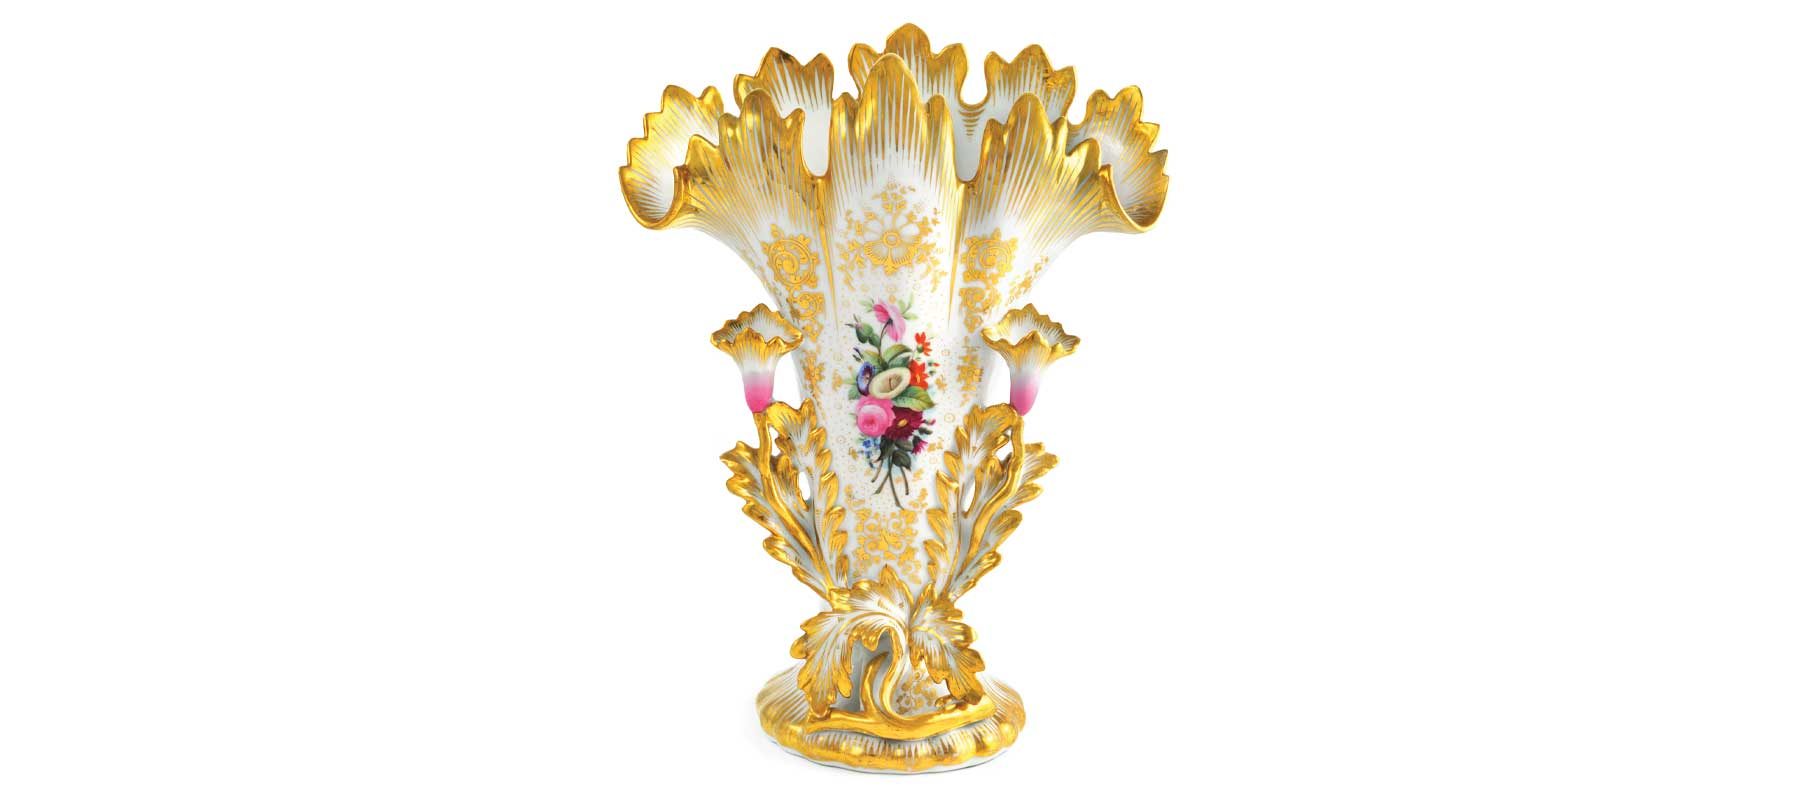 Antique decorative vase